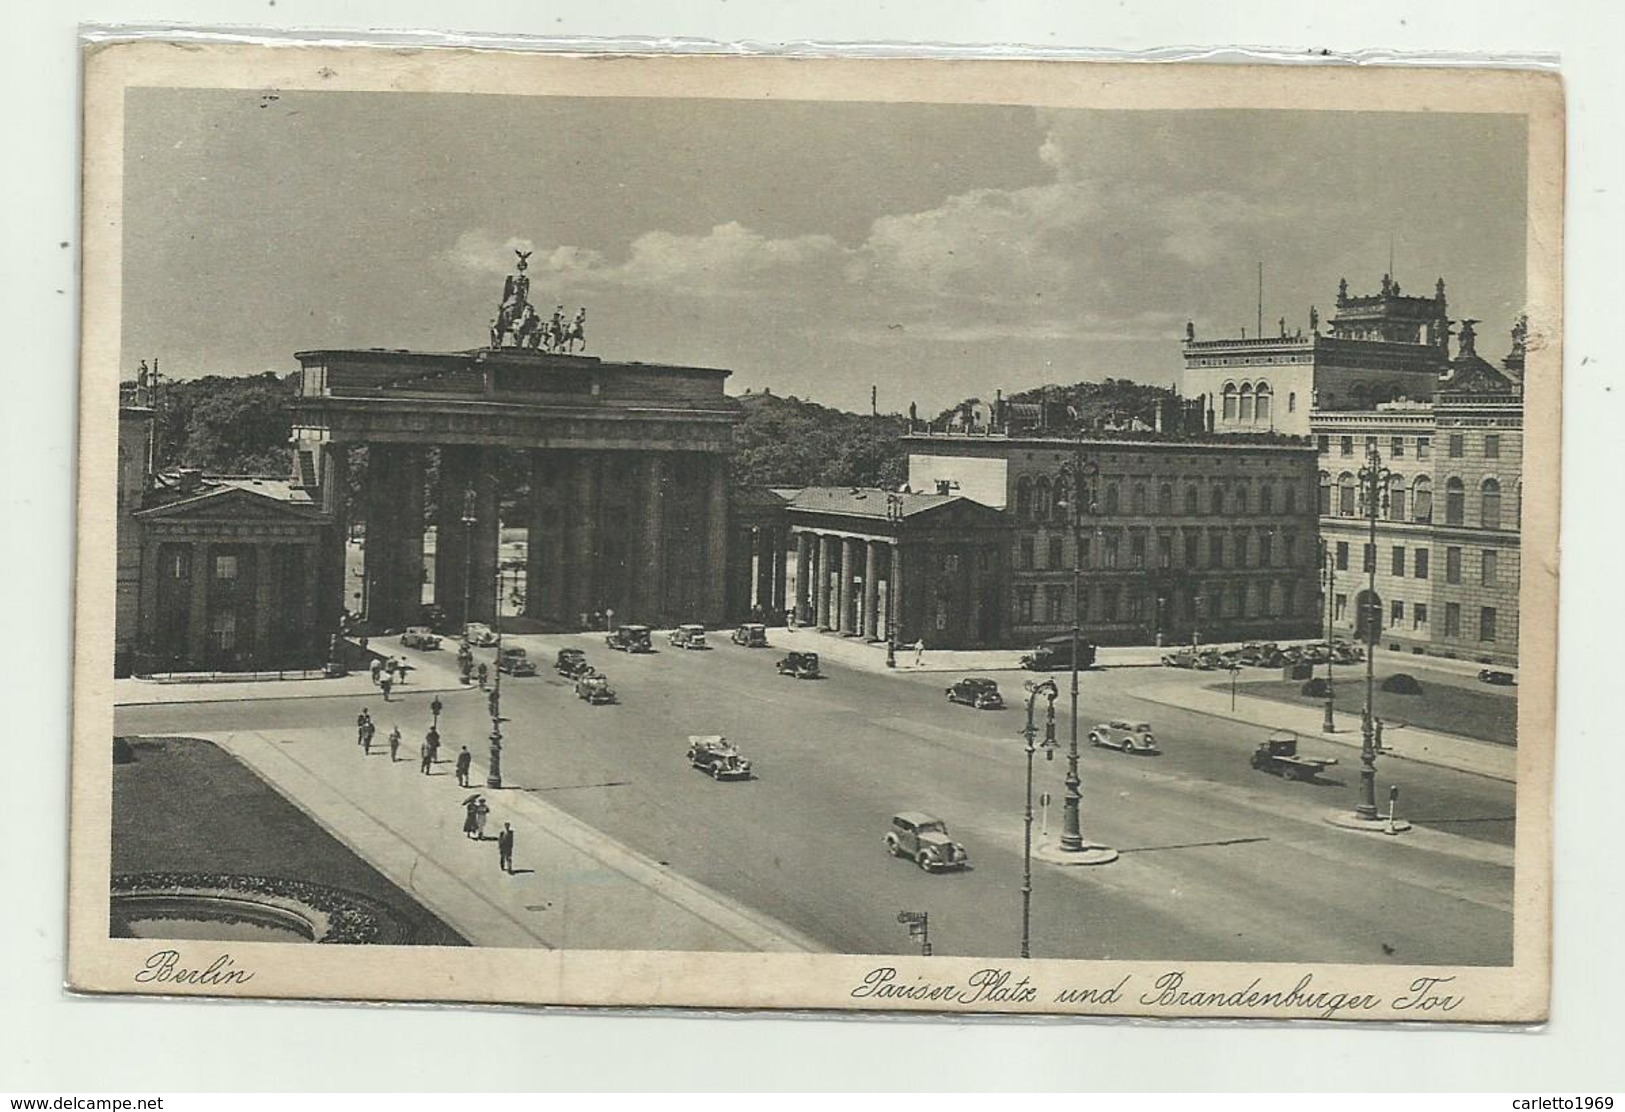 BERLIN - PARISER PLATZ UND BRANDENBURGO TOR 1939 - VIAGGIATA    FP - Brandenburger Door